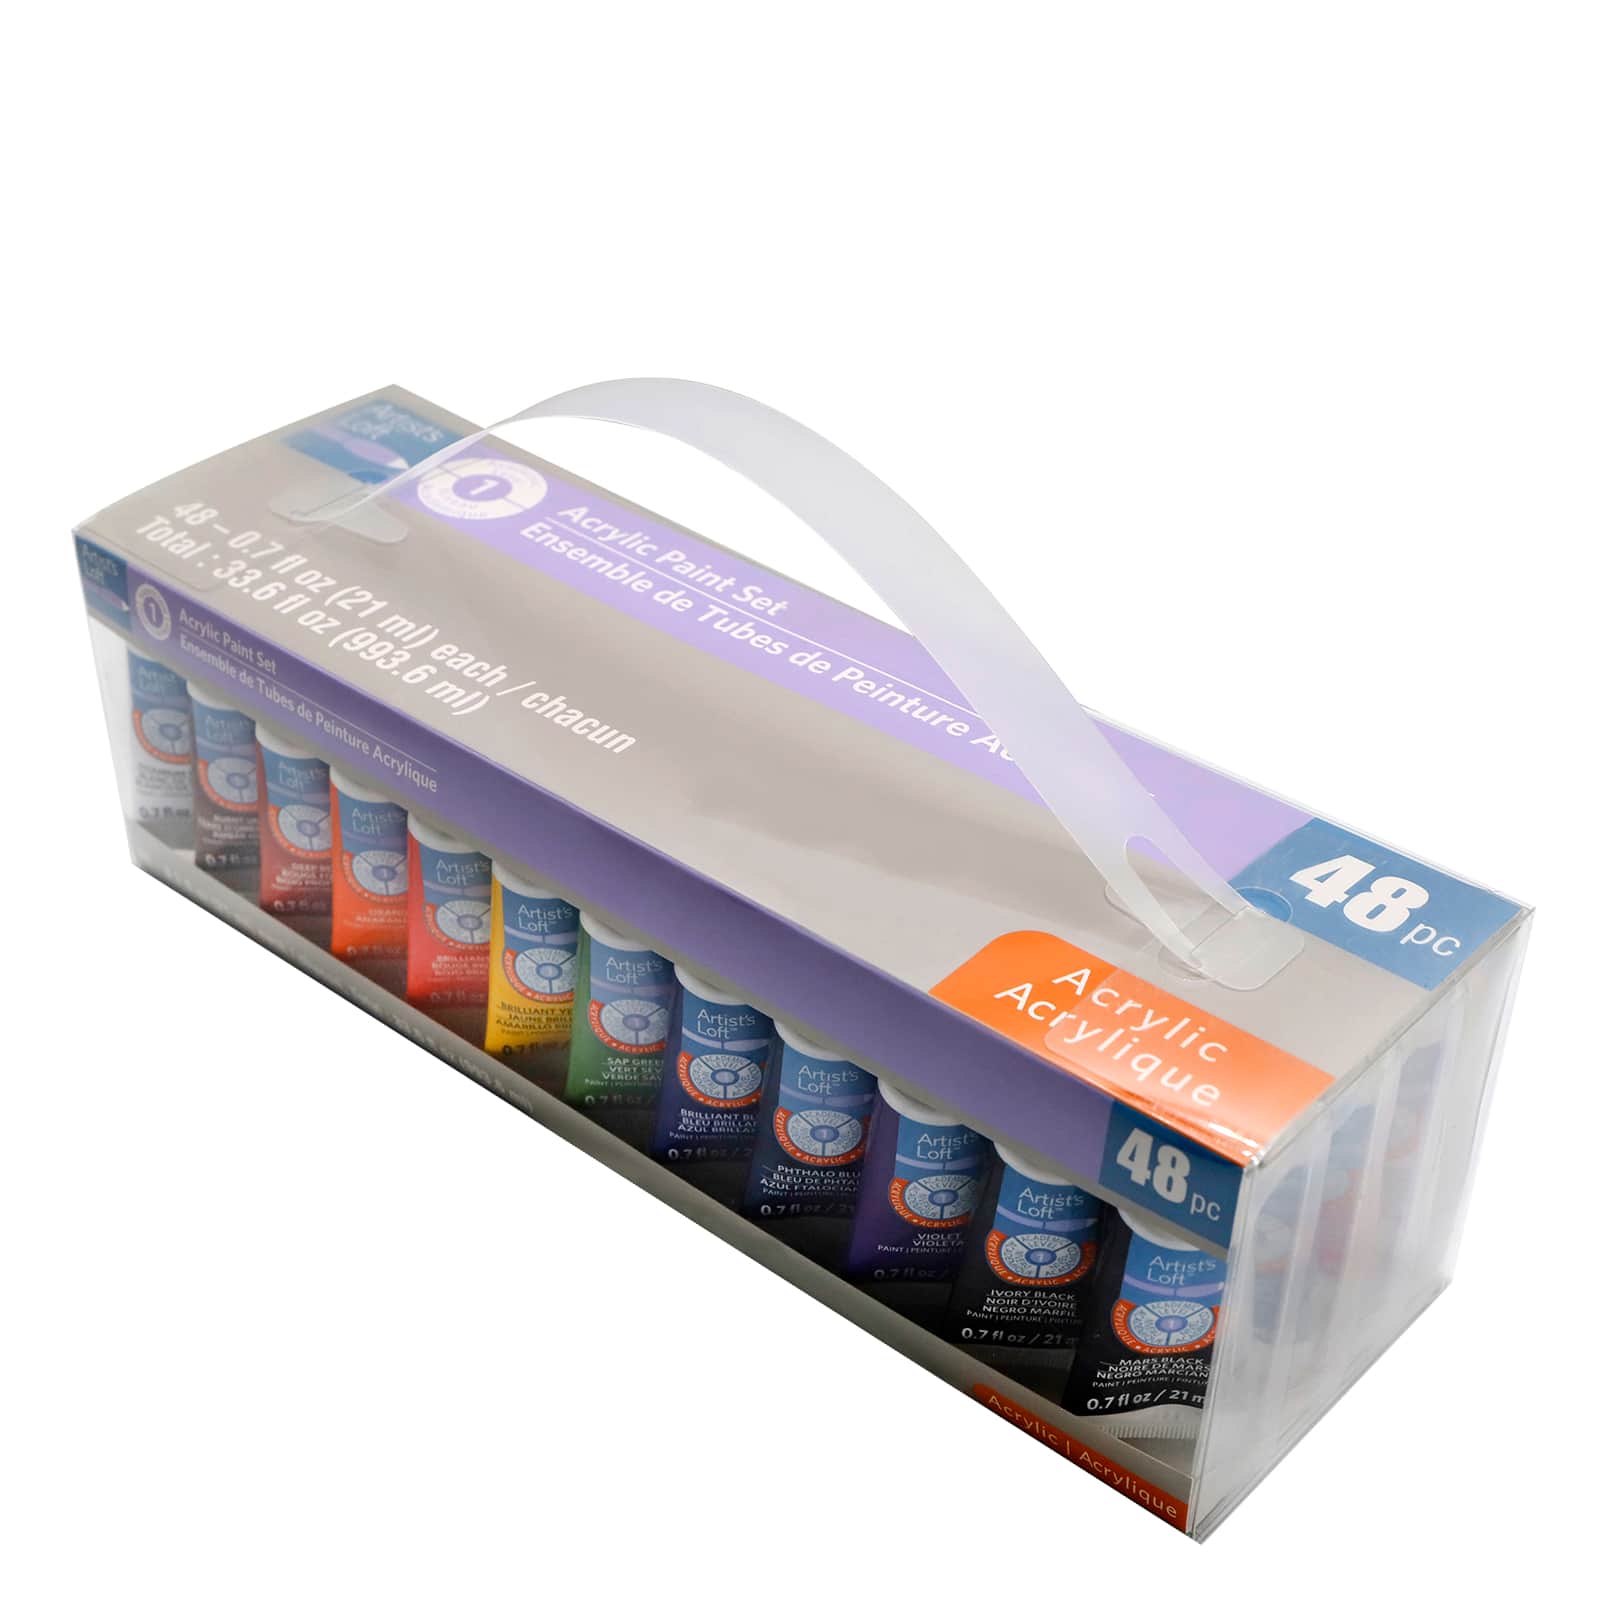 New Artist's Loft Acrylic Paint Color Set Box x48 Tubes Total